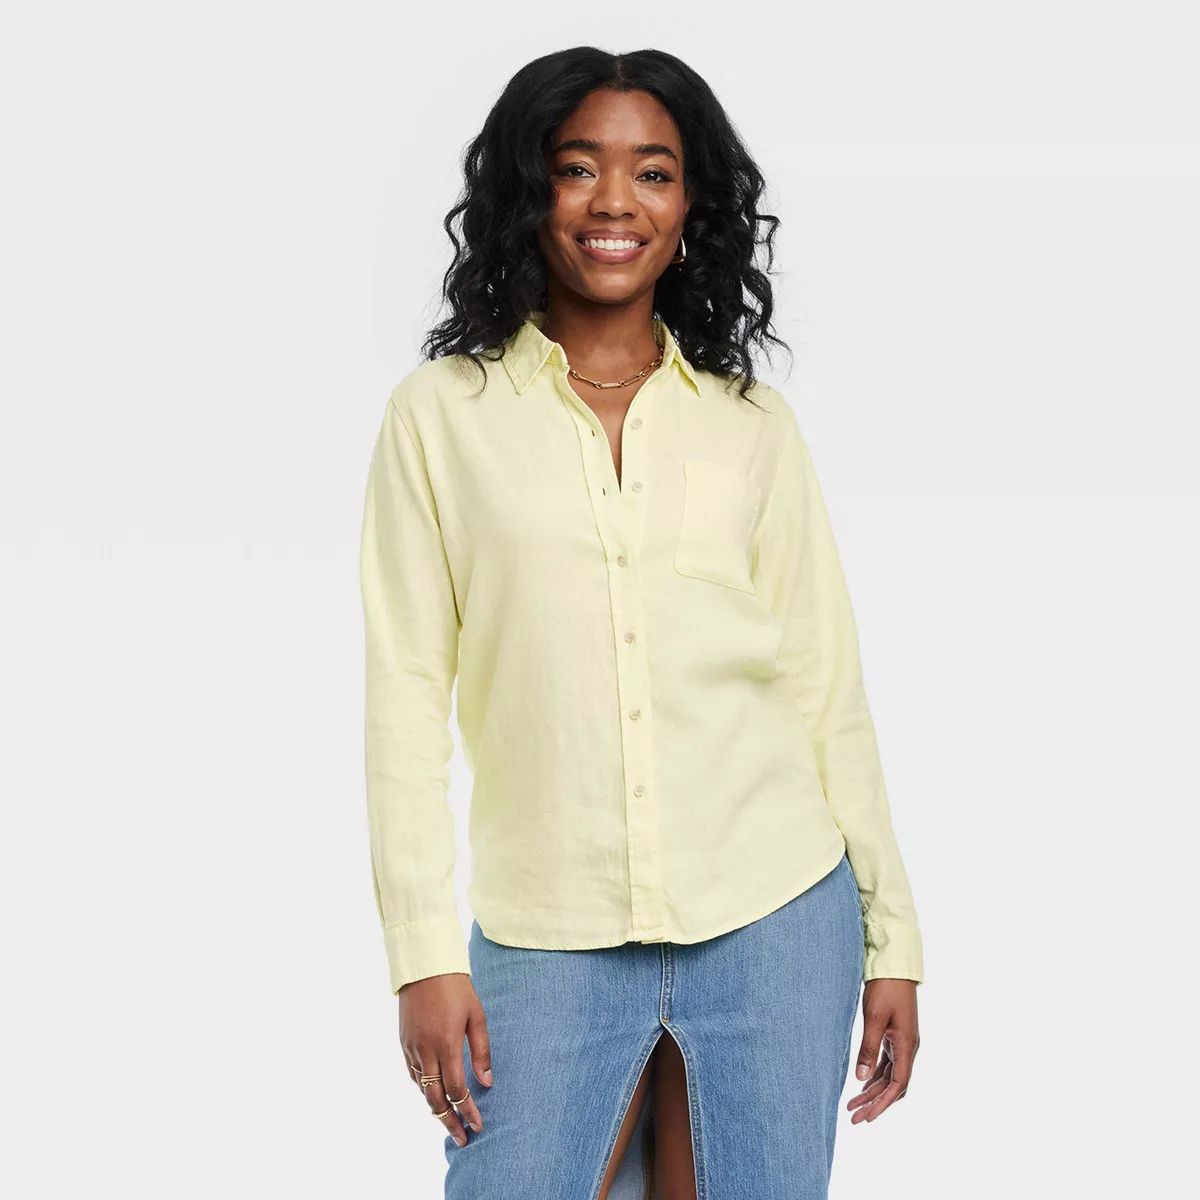 Women's Linen Long Sleeve Collared Button-Down Shirt - Universal Thread™ Blue 4X | Target